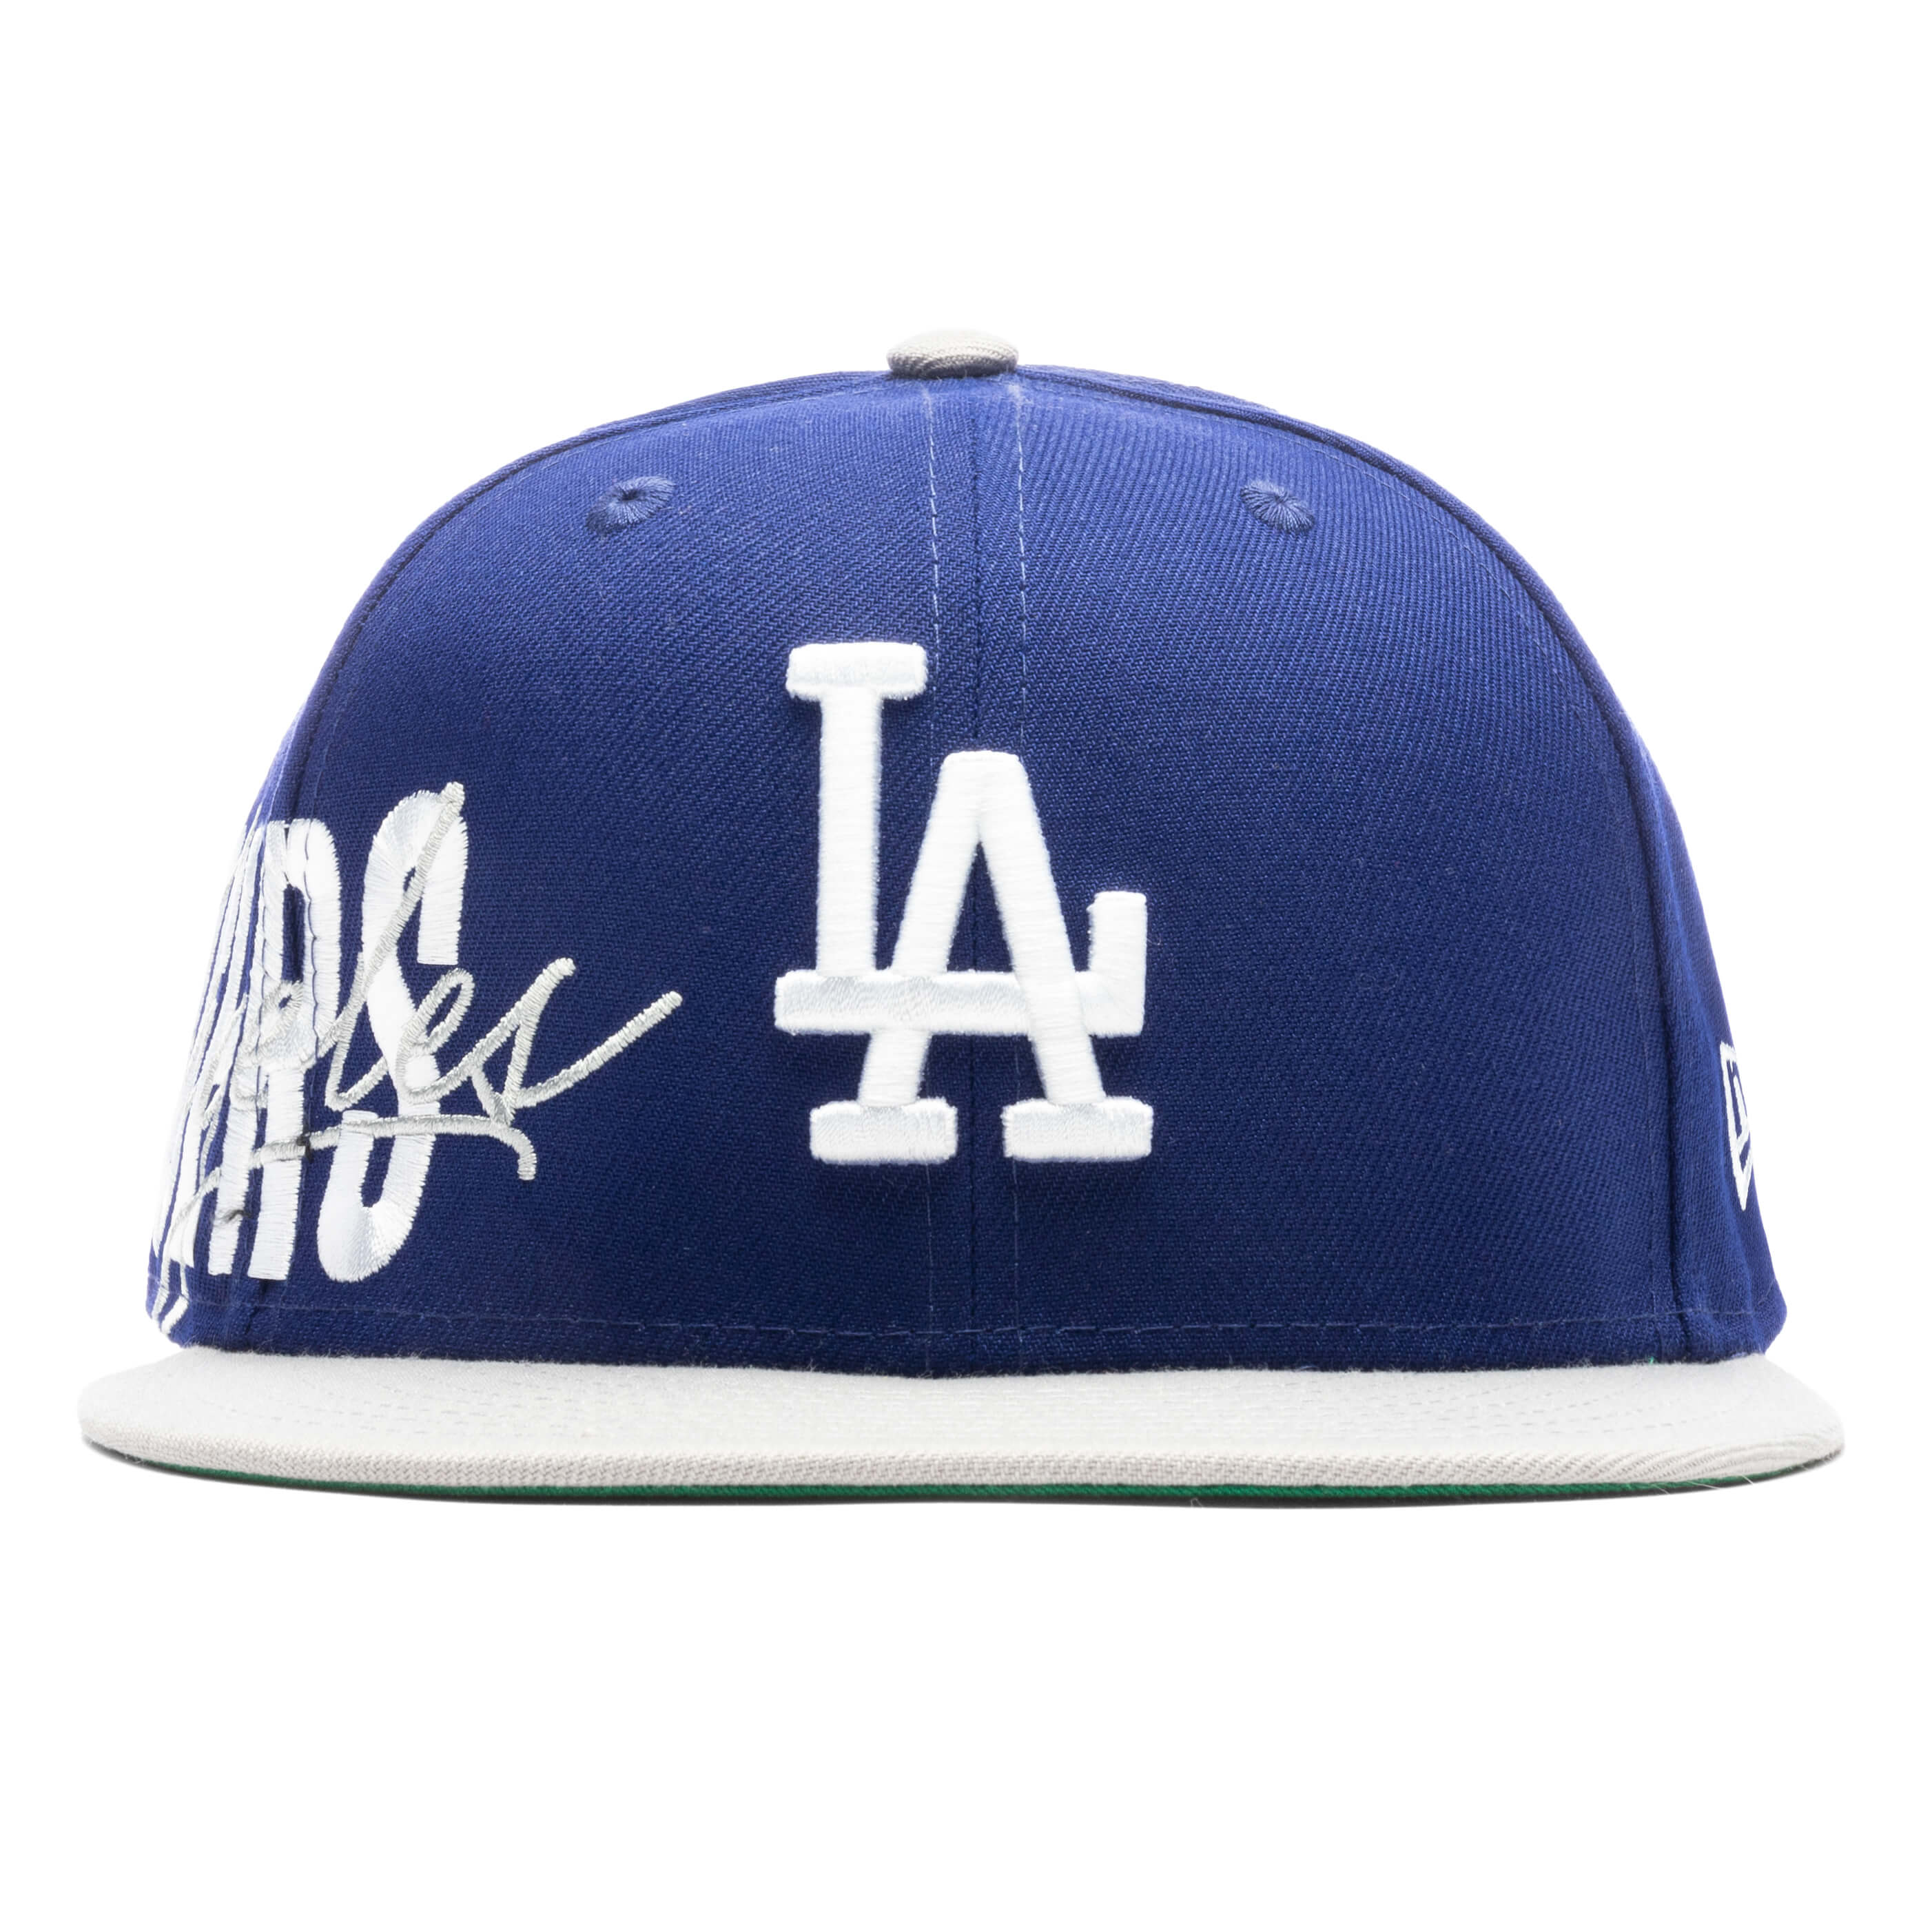 Sidefont 950 Adjustable - Los Angeles Dodgers